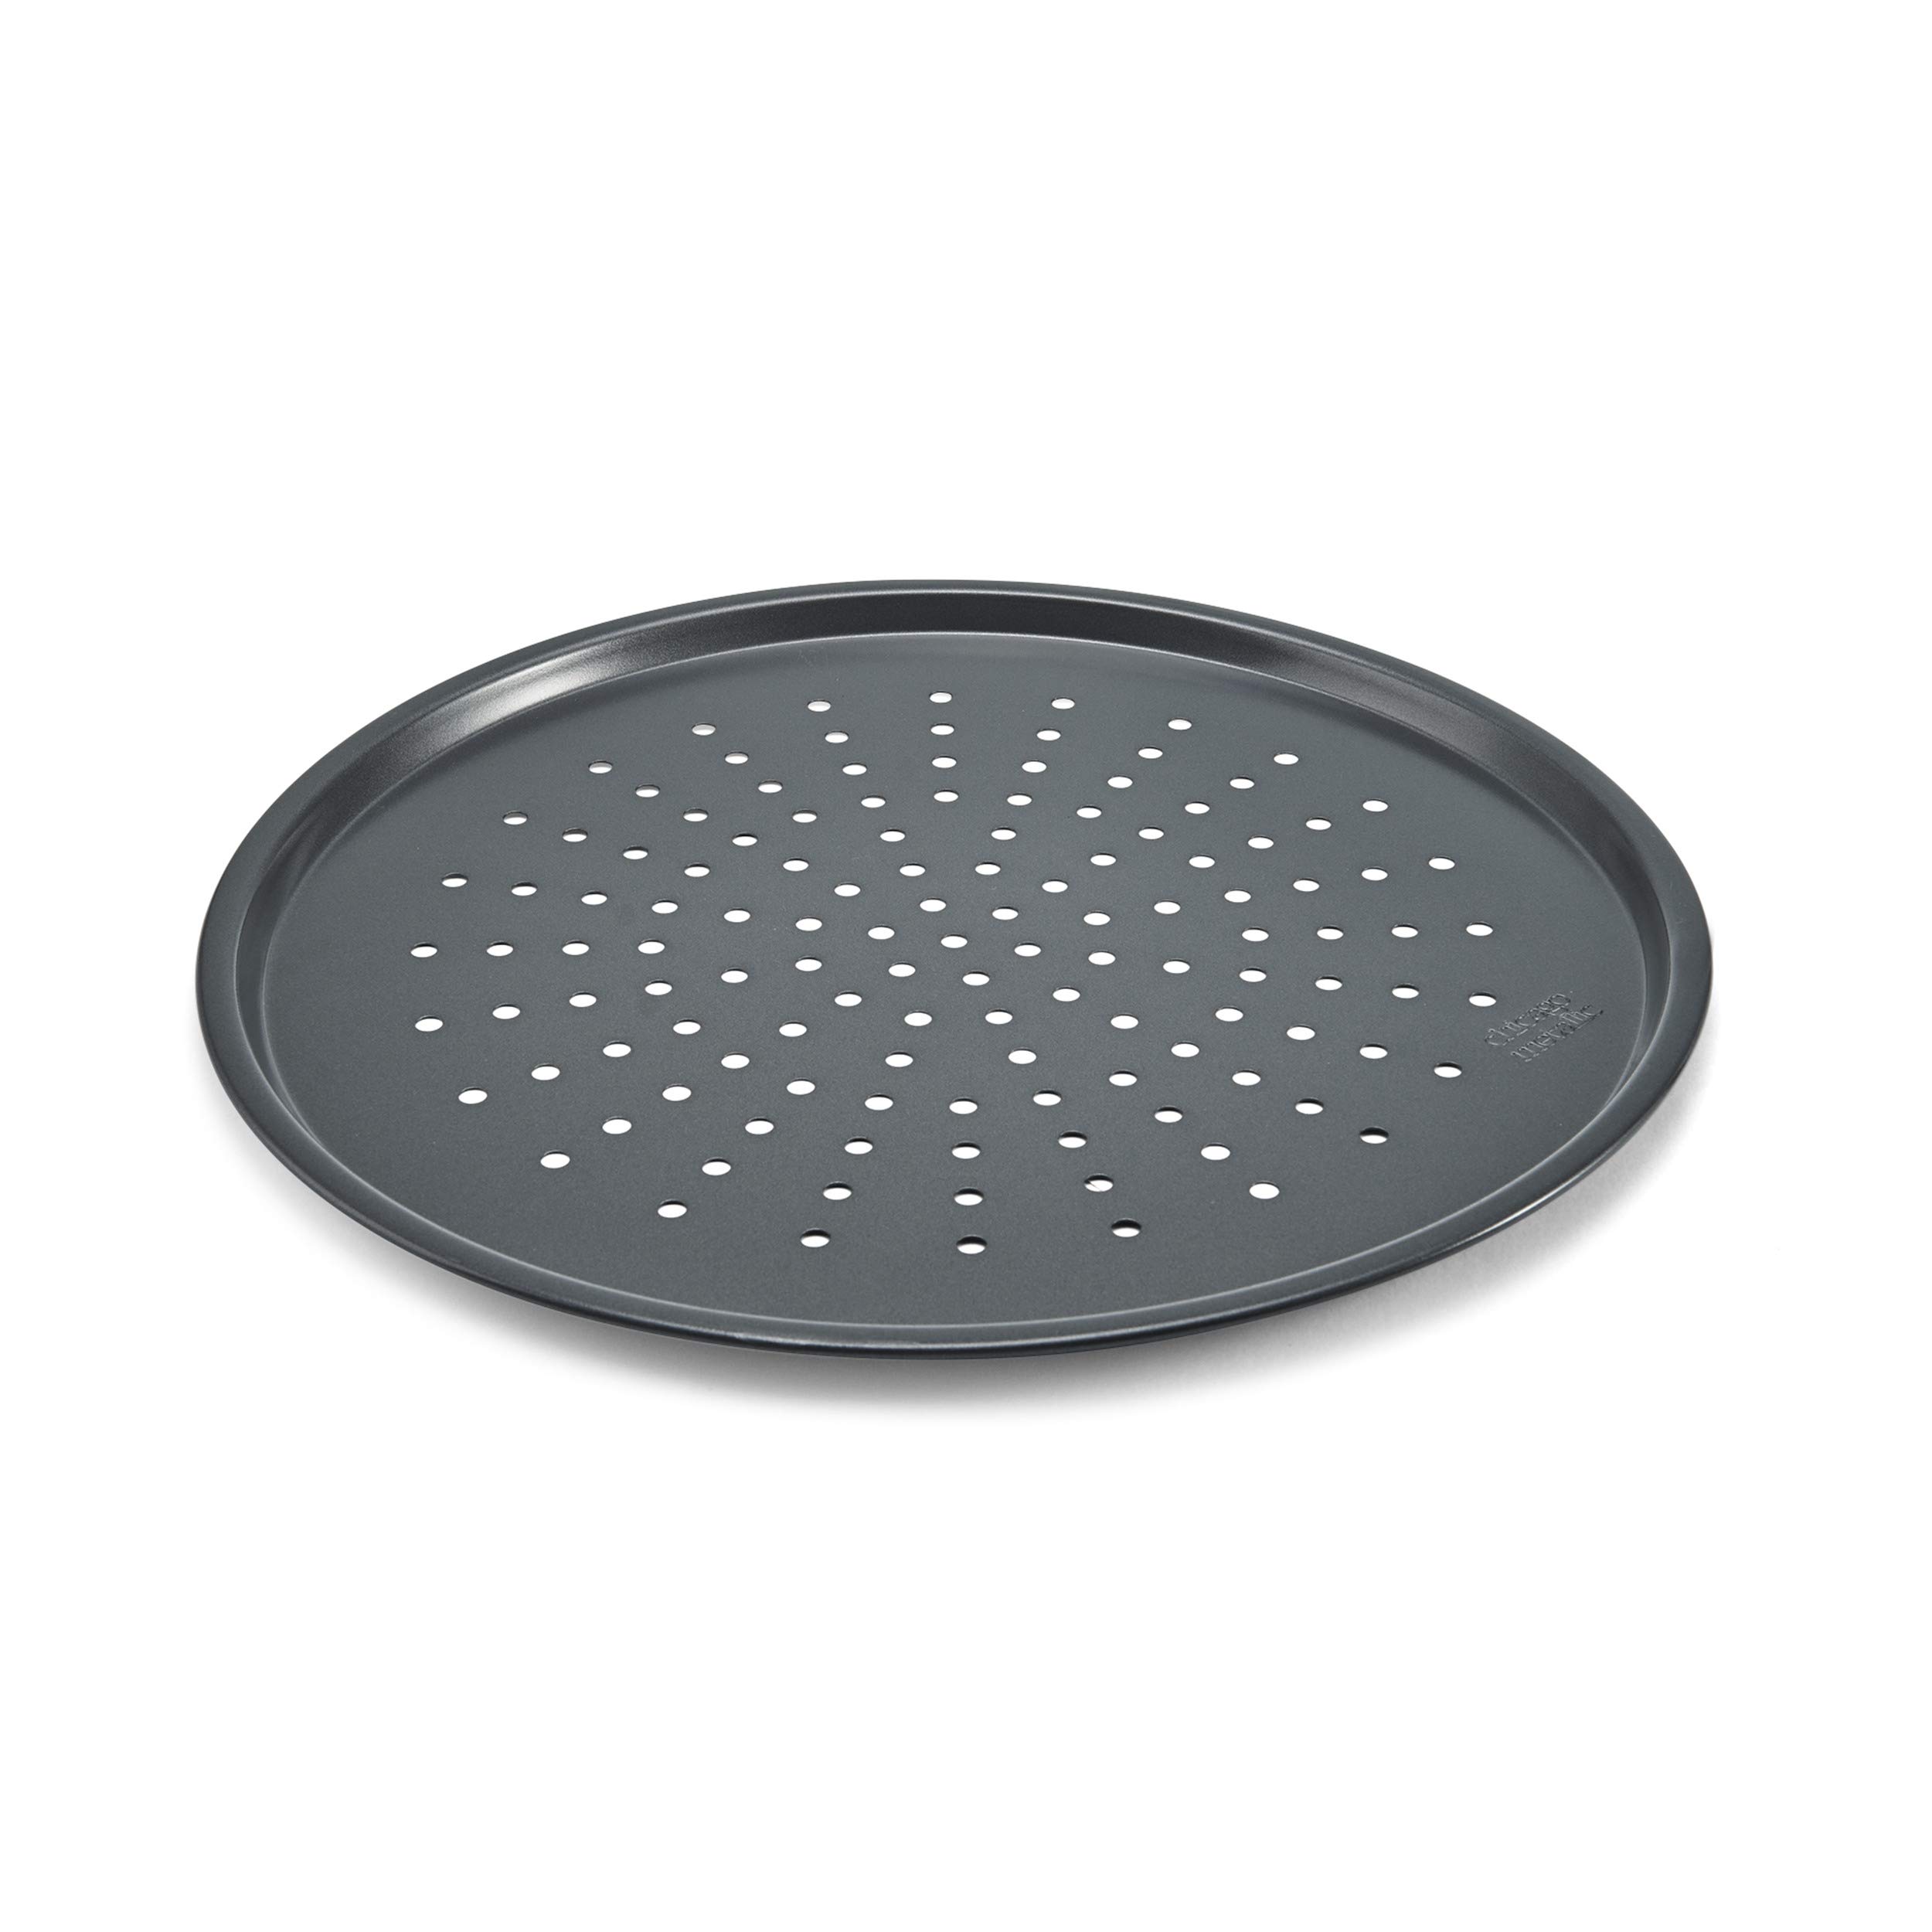 Chicago Metallic Non-Stick Perforated Pizza Crisper, 14-Inch diameter, Aluminized Steel